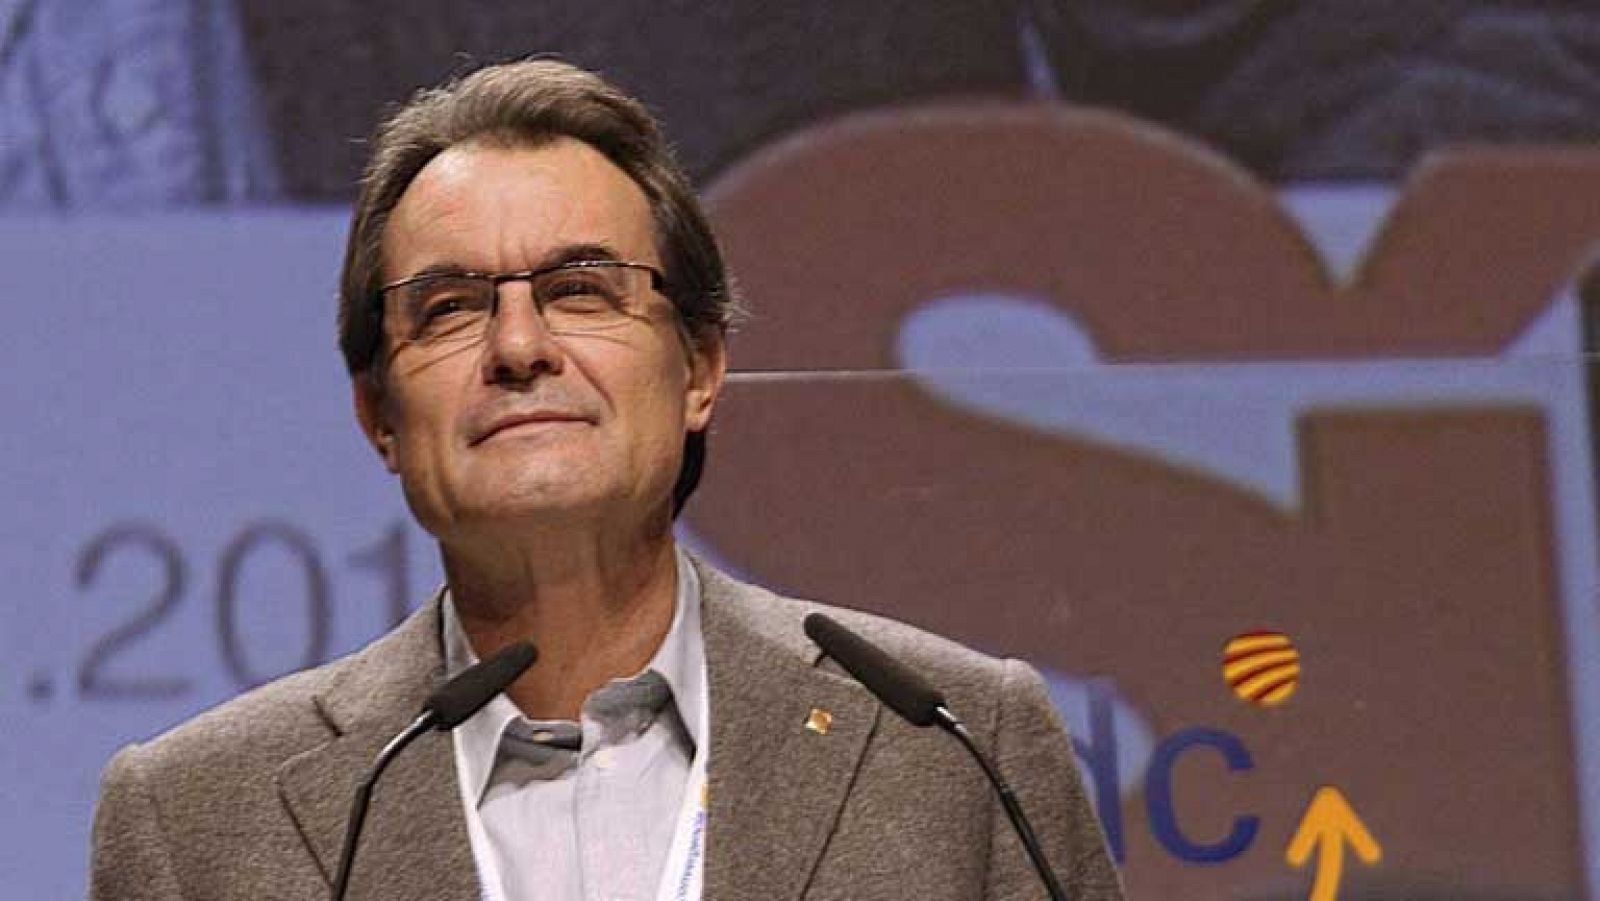 Artur Mas pide a Rajoy voluntad de llegar a acuerdos